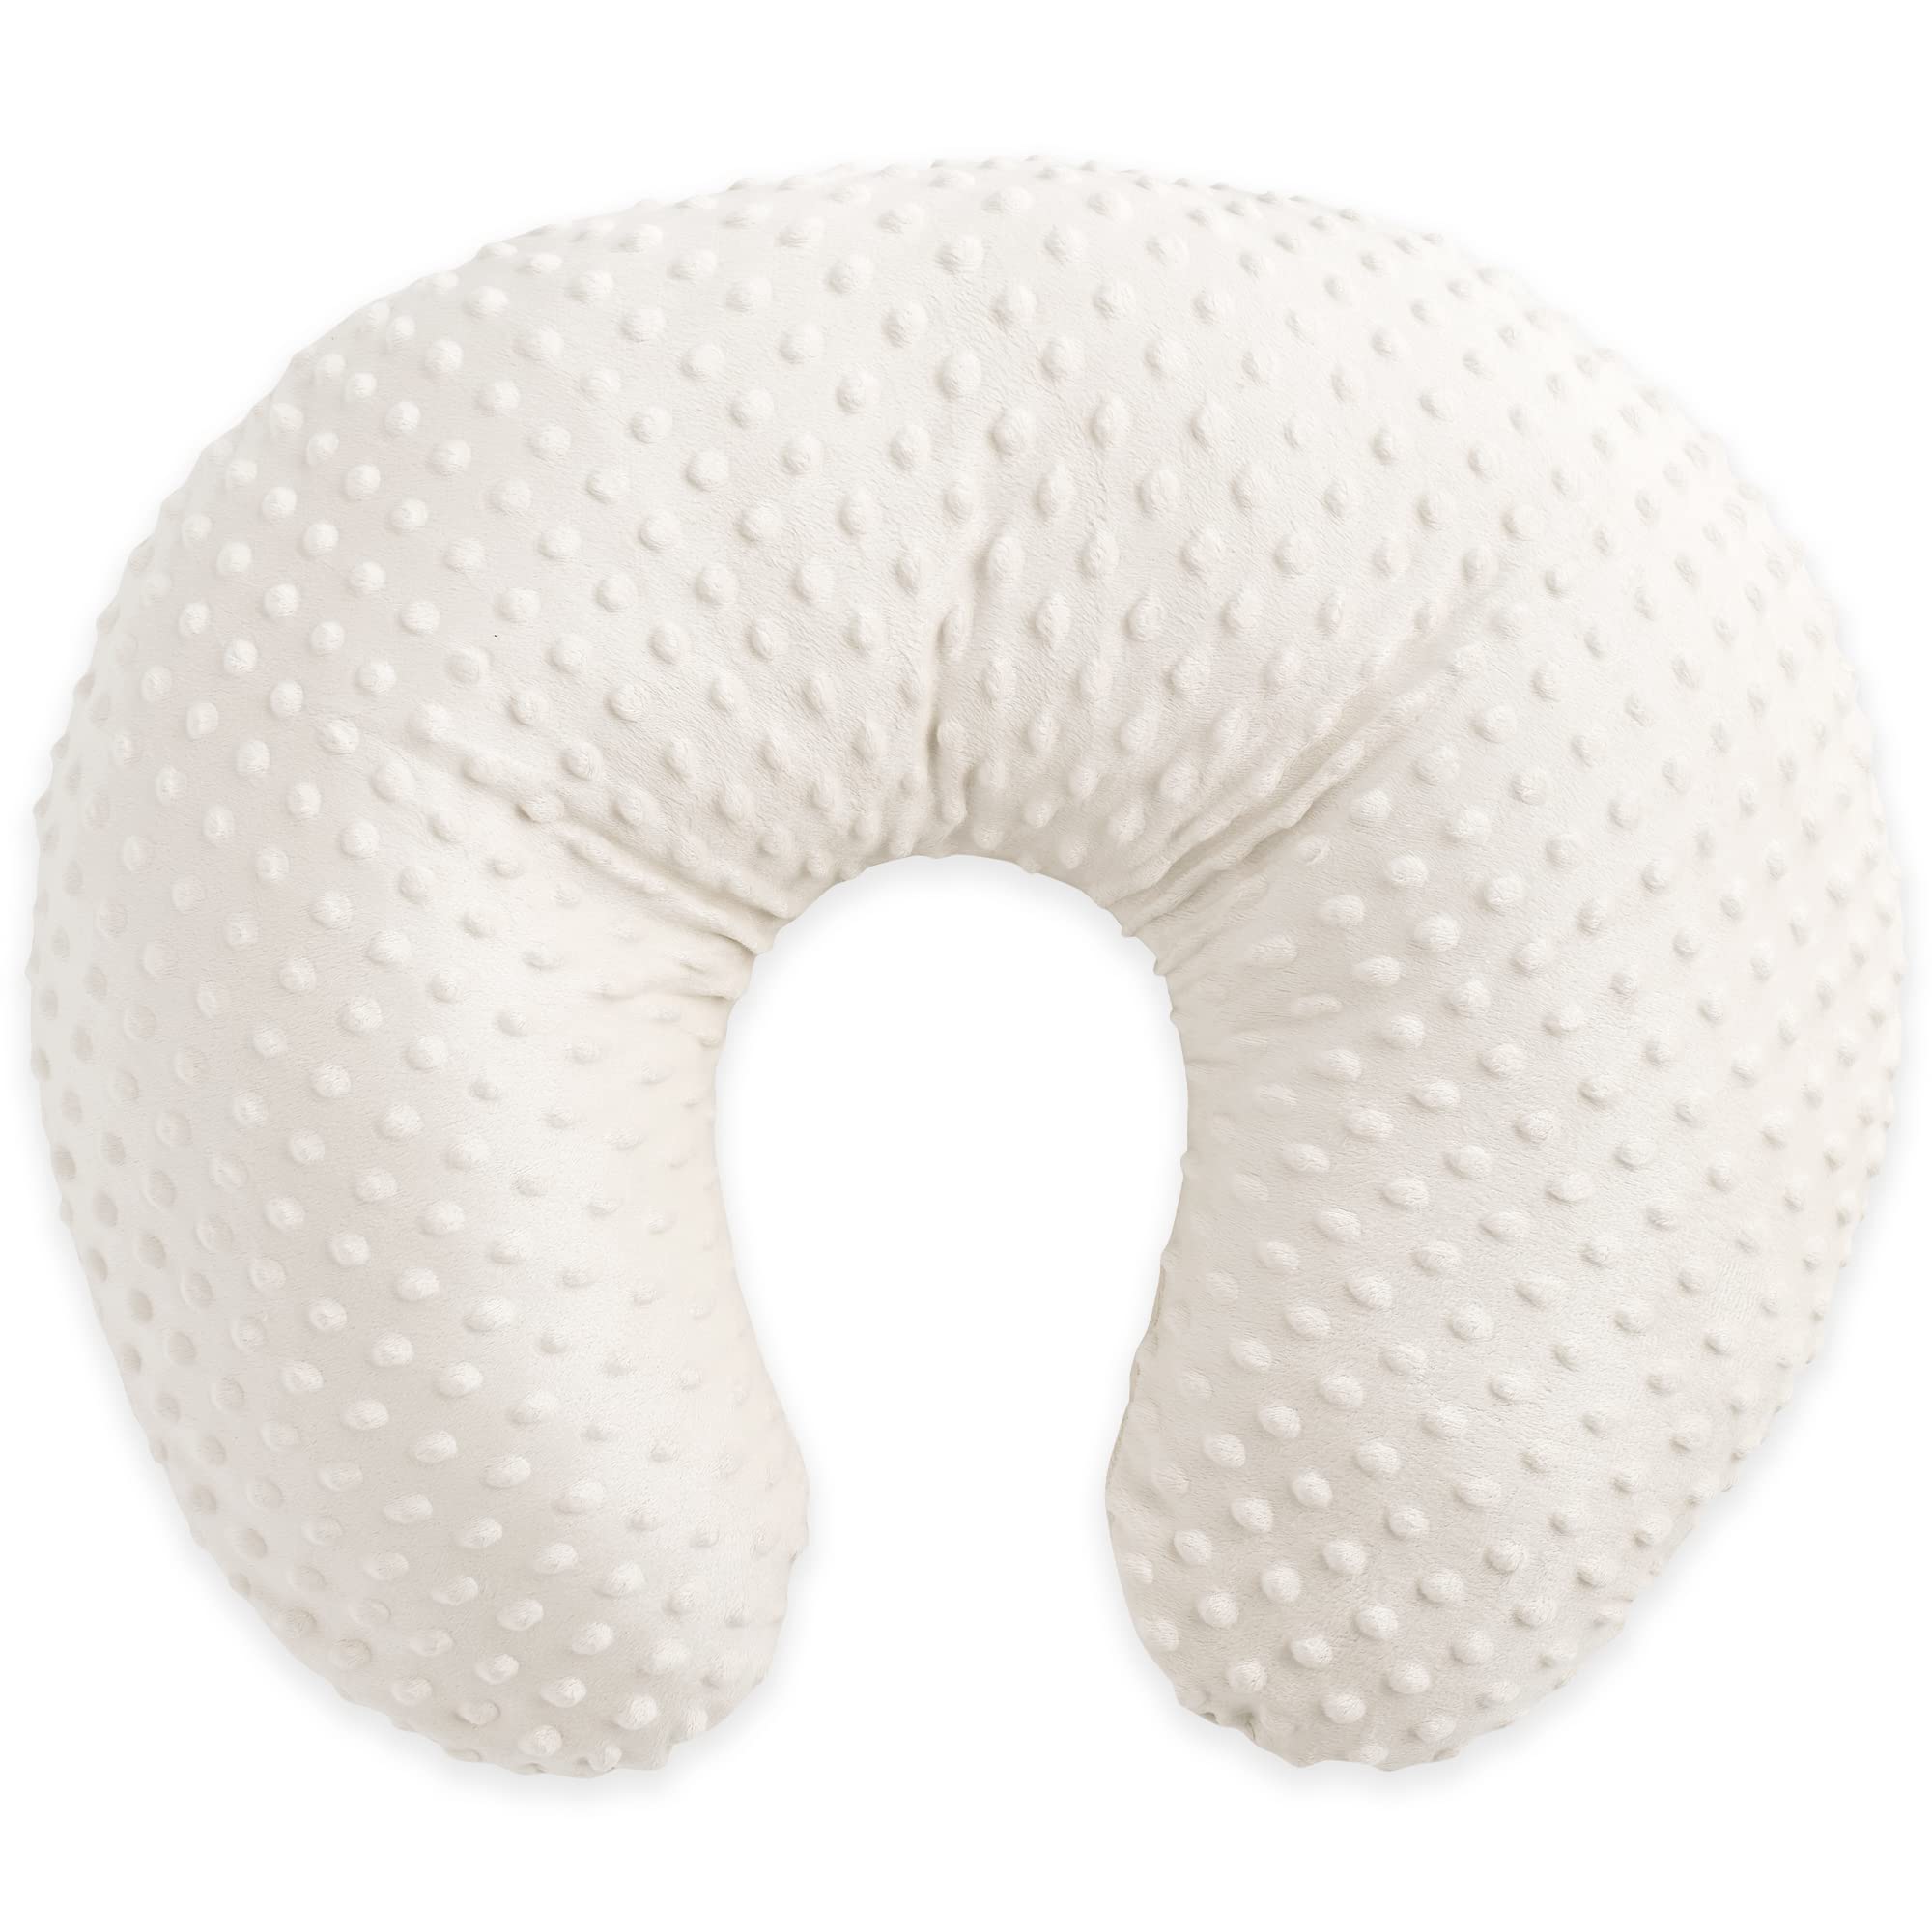 Duffi Baby Stillkissen für Neugeborene, Topitos, Bezug aus 100% Polyester, sehr weich, Füllung aus Hohlfaser, geprägtes Design mit Punkten, Weiß